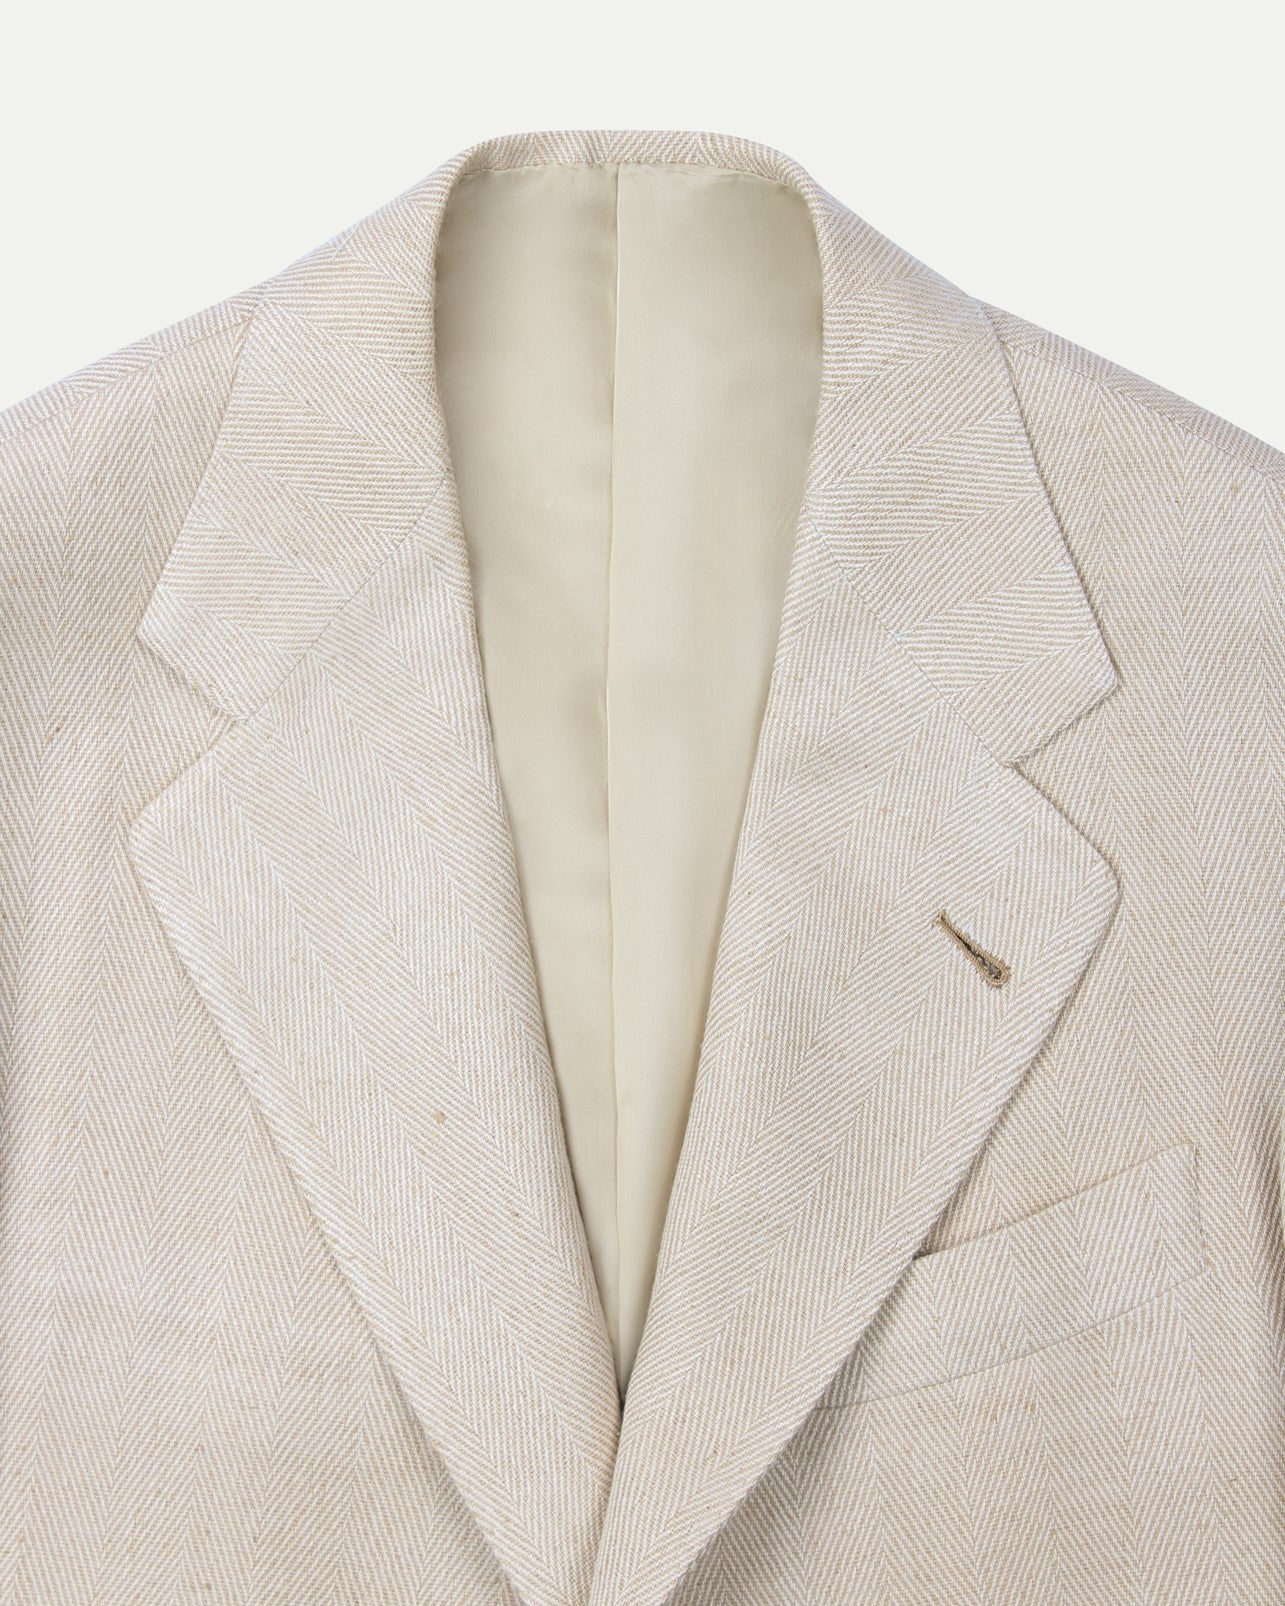 Made-To-Order Sport Coat Beige Herringbone Silk